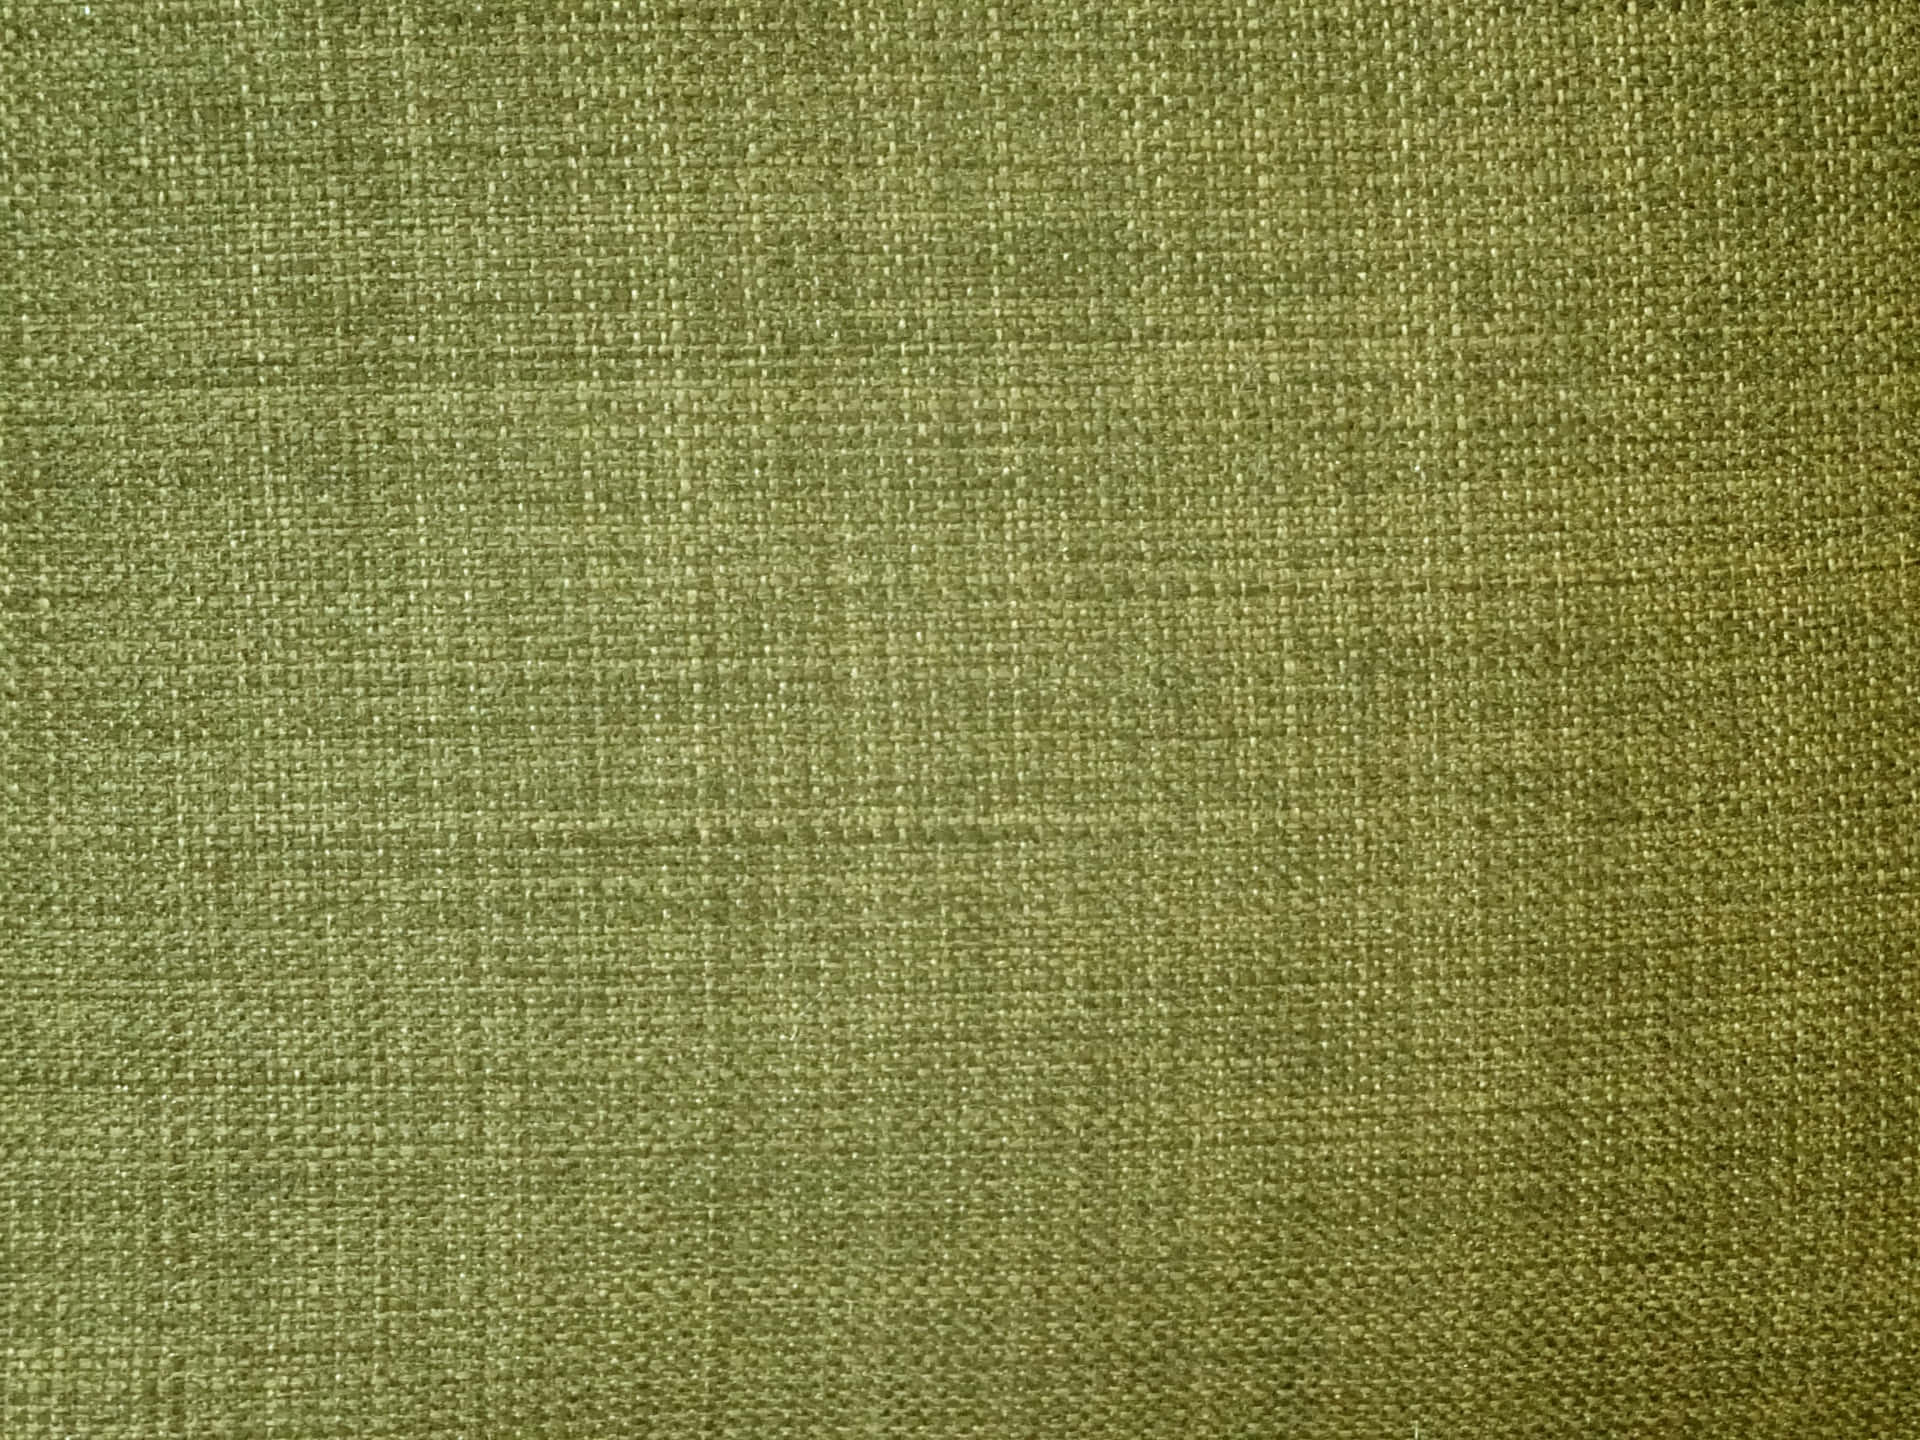 Fondode Lienzo Con Textura En Color Verde Oliva.